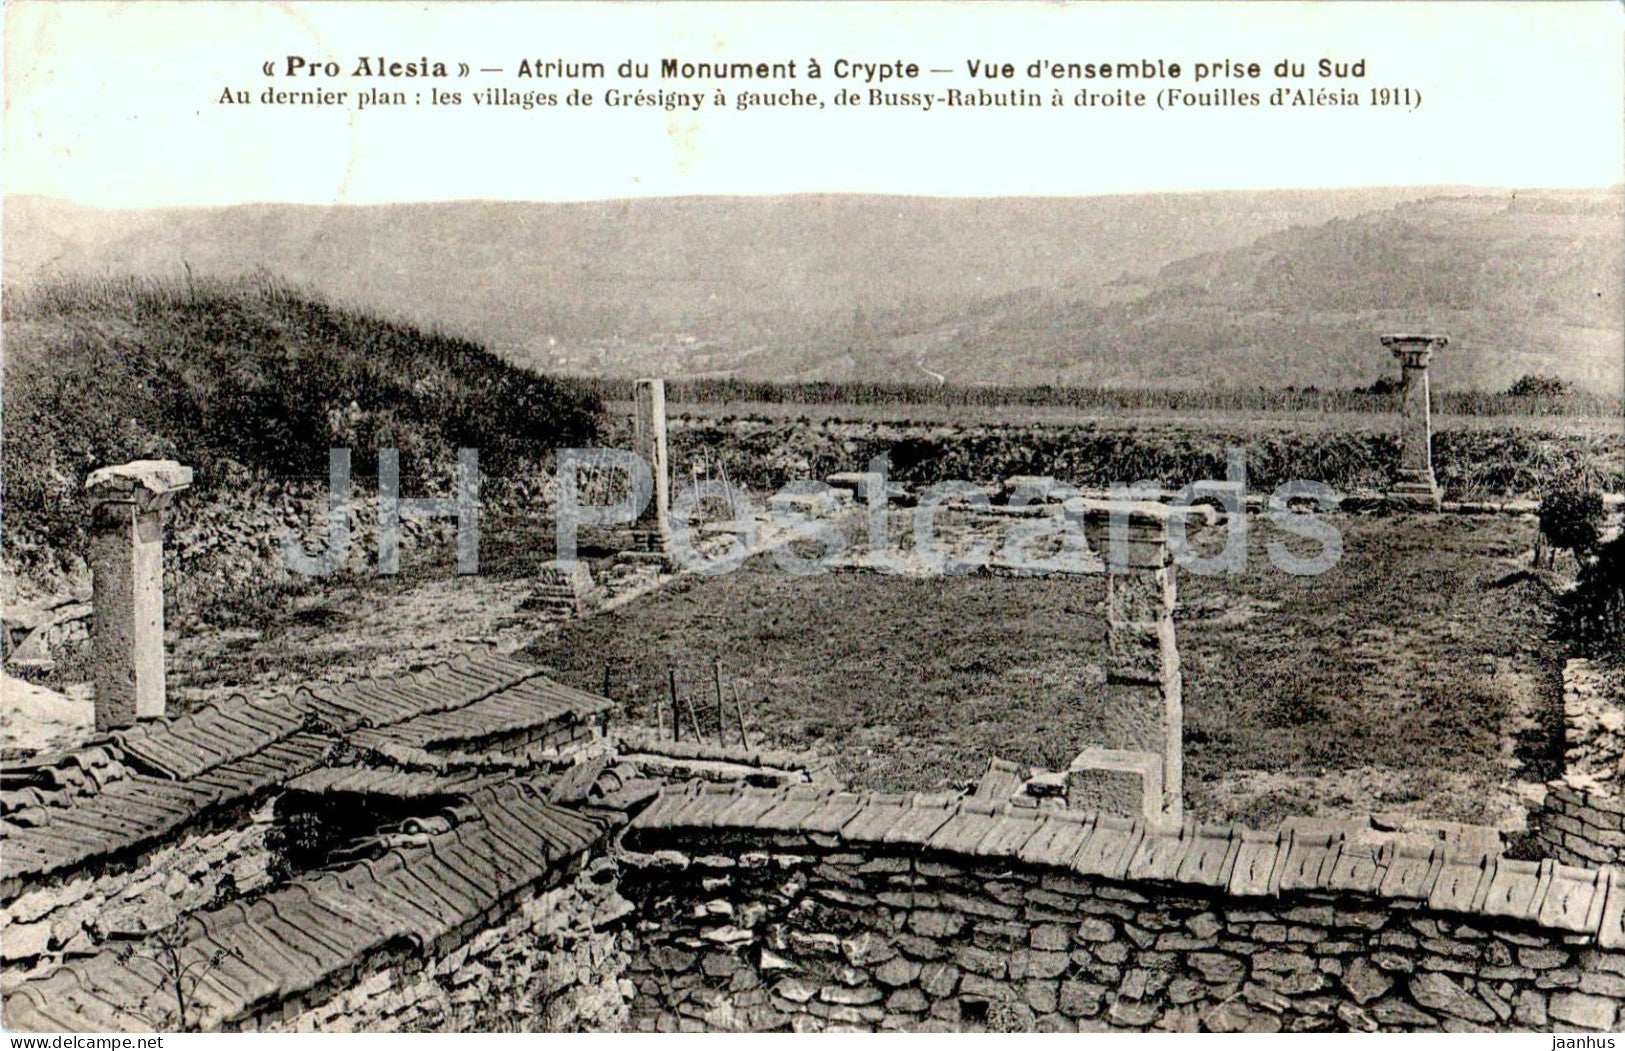 Pro Alesia - Atrium du Monument a Crypte - Vue d'ensemble prise Sud - ancient world old postcard - 1938 - France - used - JH Postcards